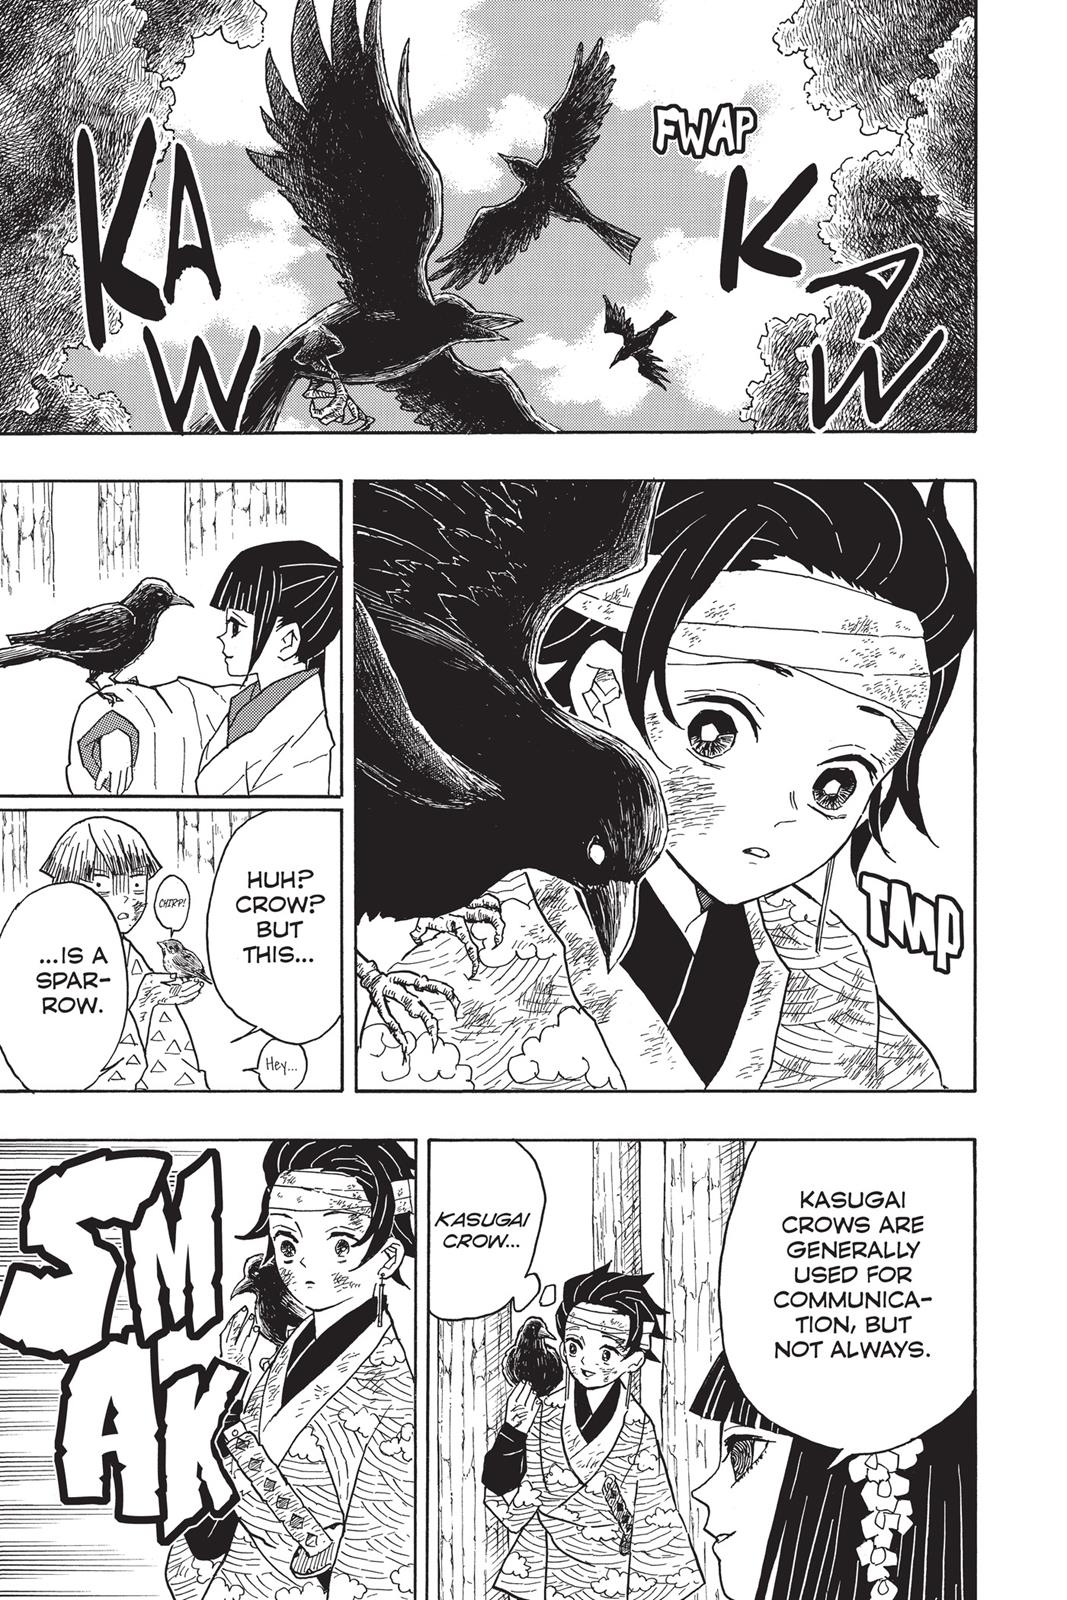 Demon Slayer Manga Manga Chapter - 8 - image 14